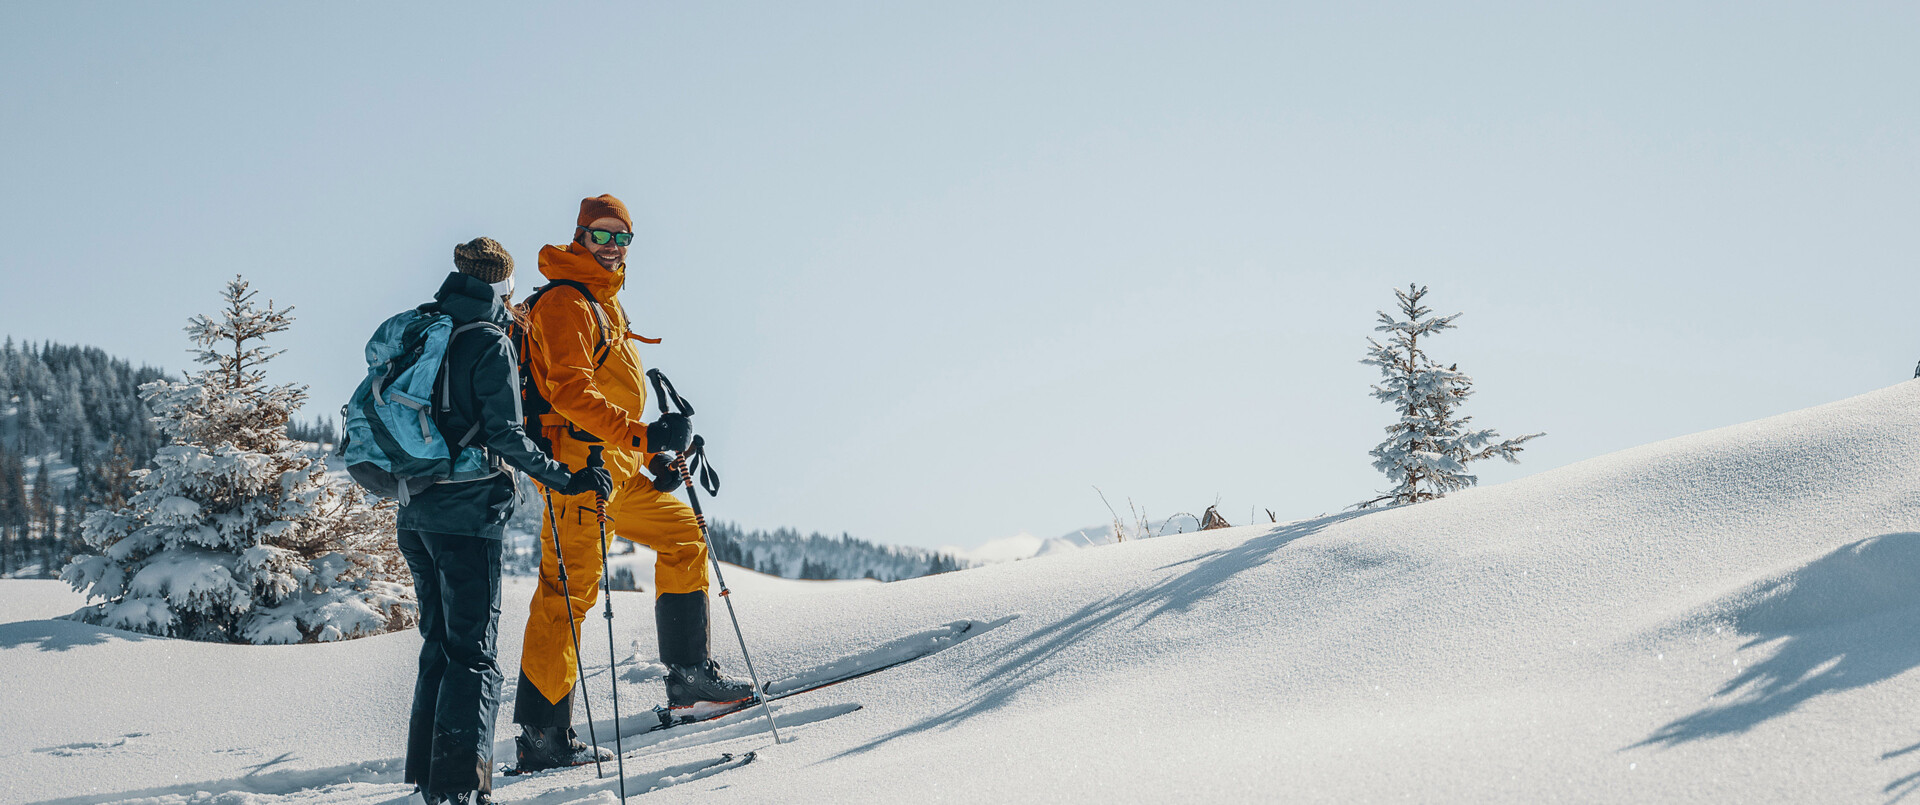 Skitourengeher in der tief verschneiten Landschaft des Großarltales.